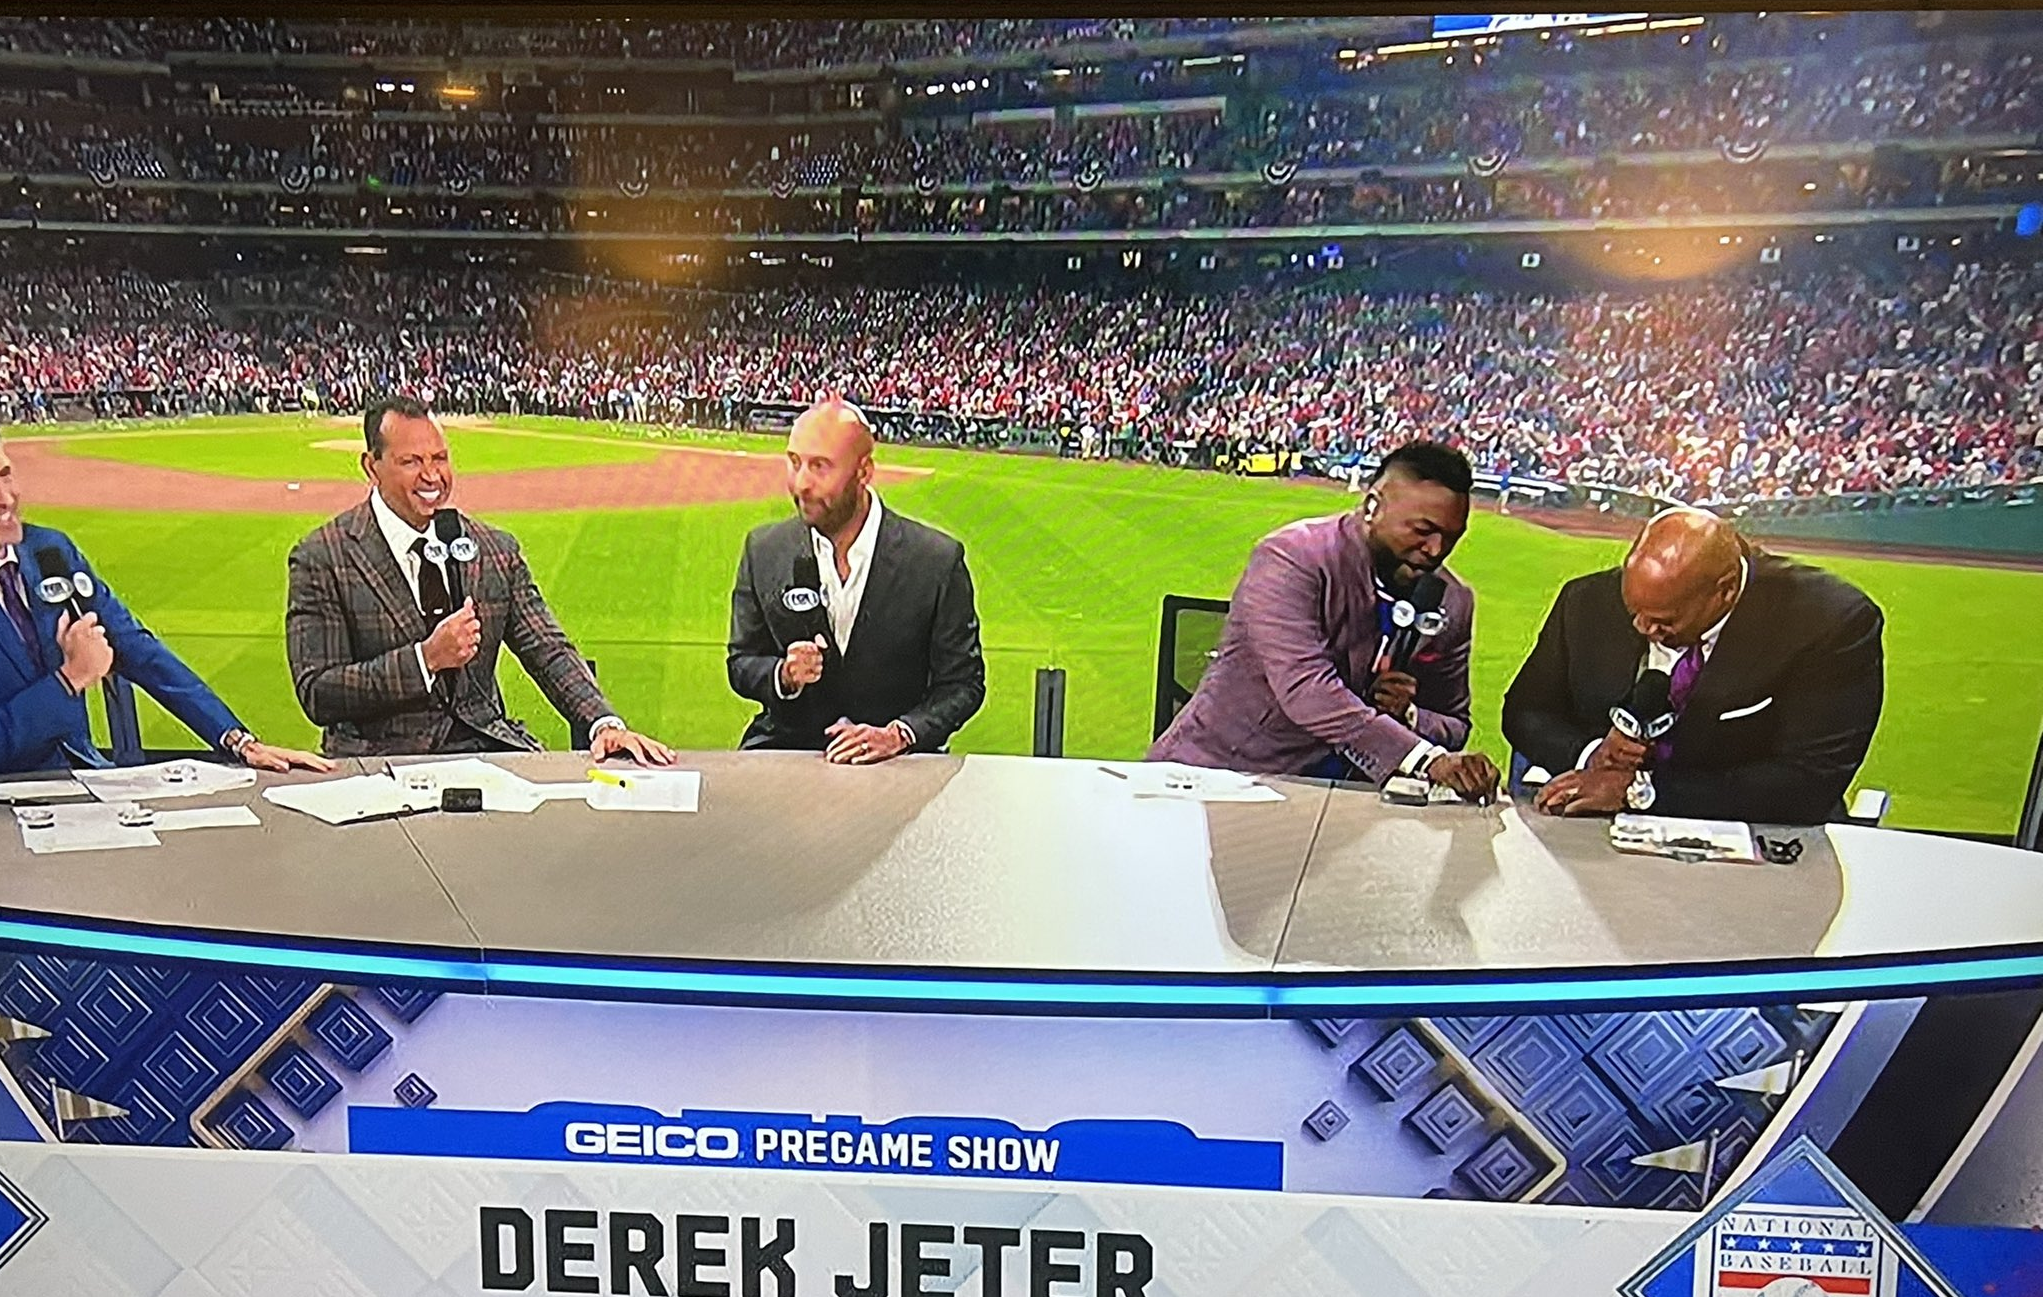 Derek Jeter through the years